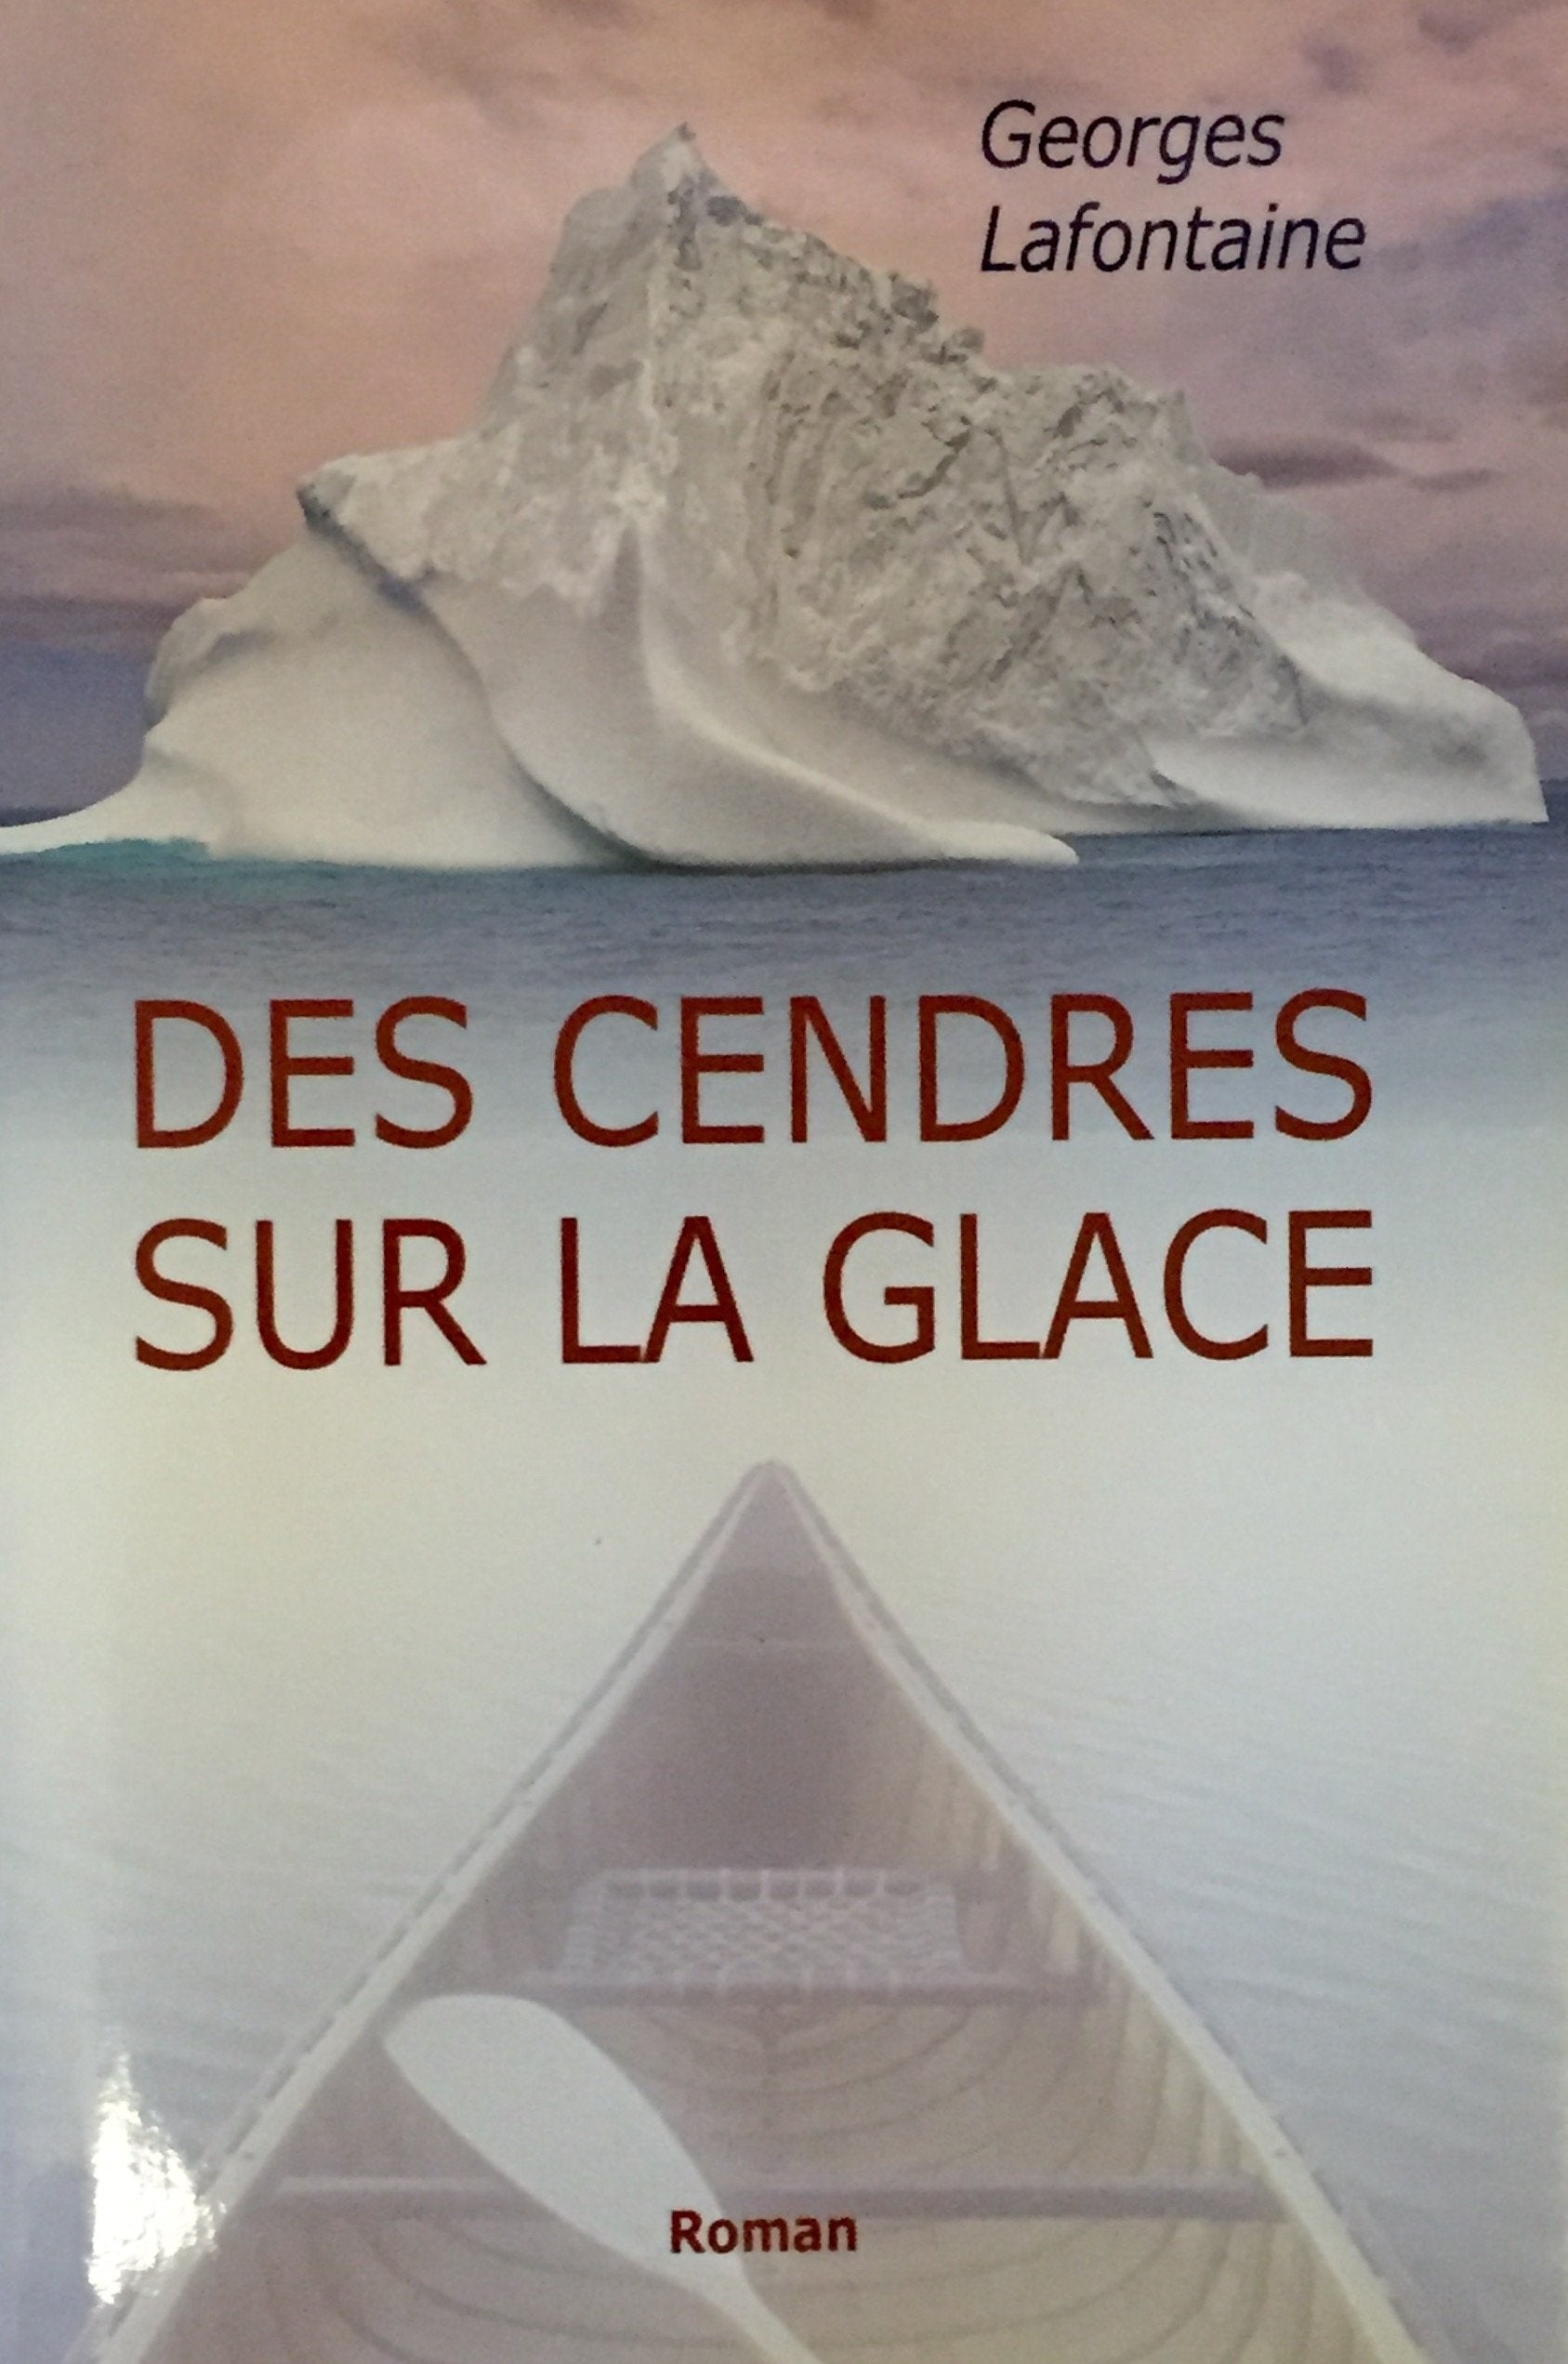 Livre ISBN 2894307721 Des cendres sur la glace (Georges Lafontaine)